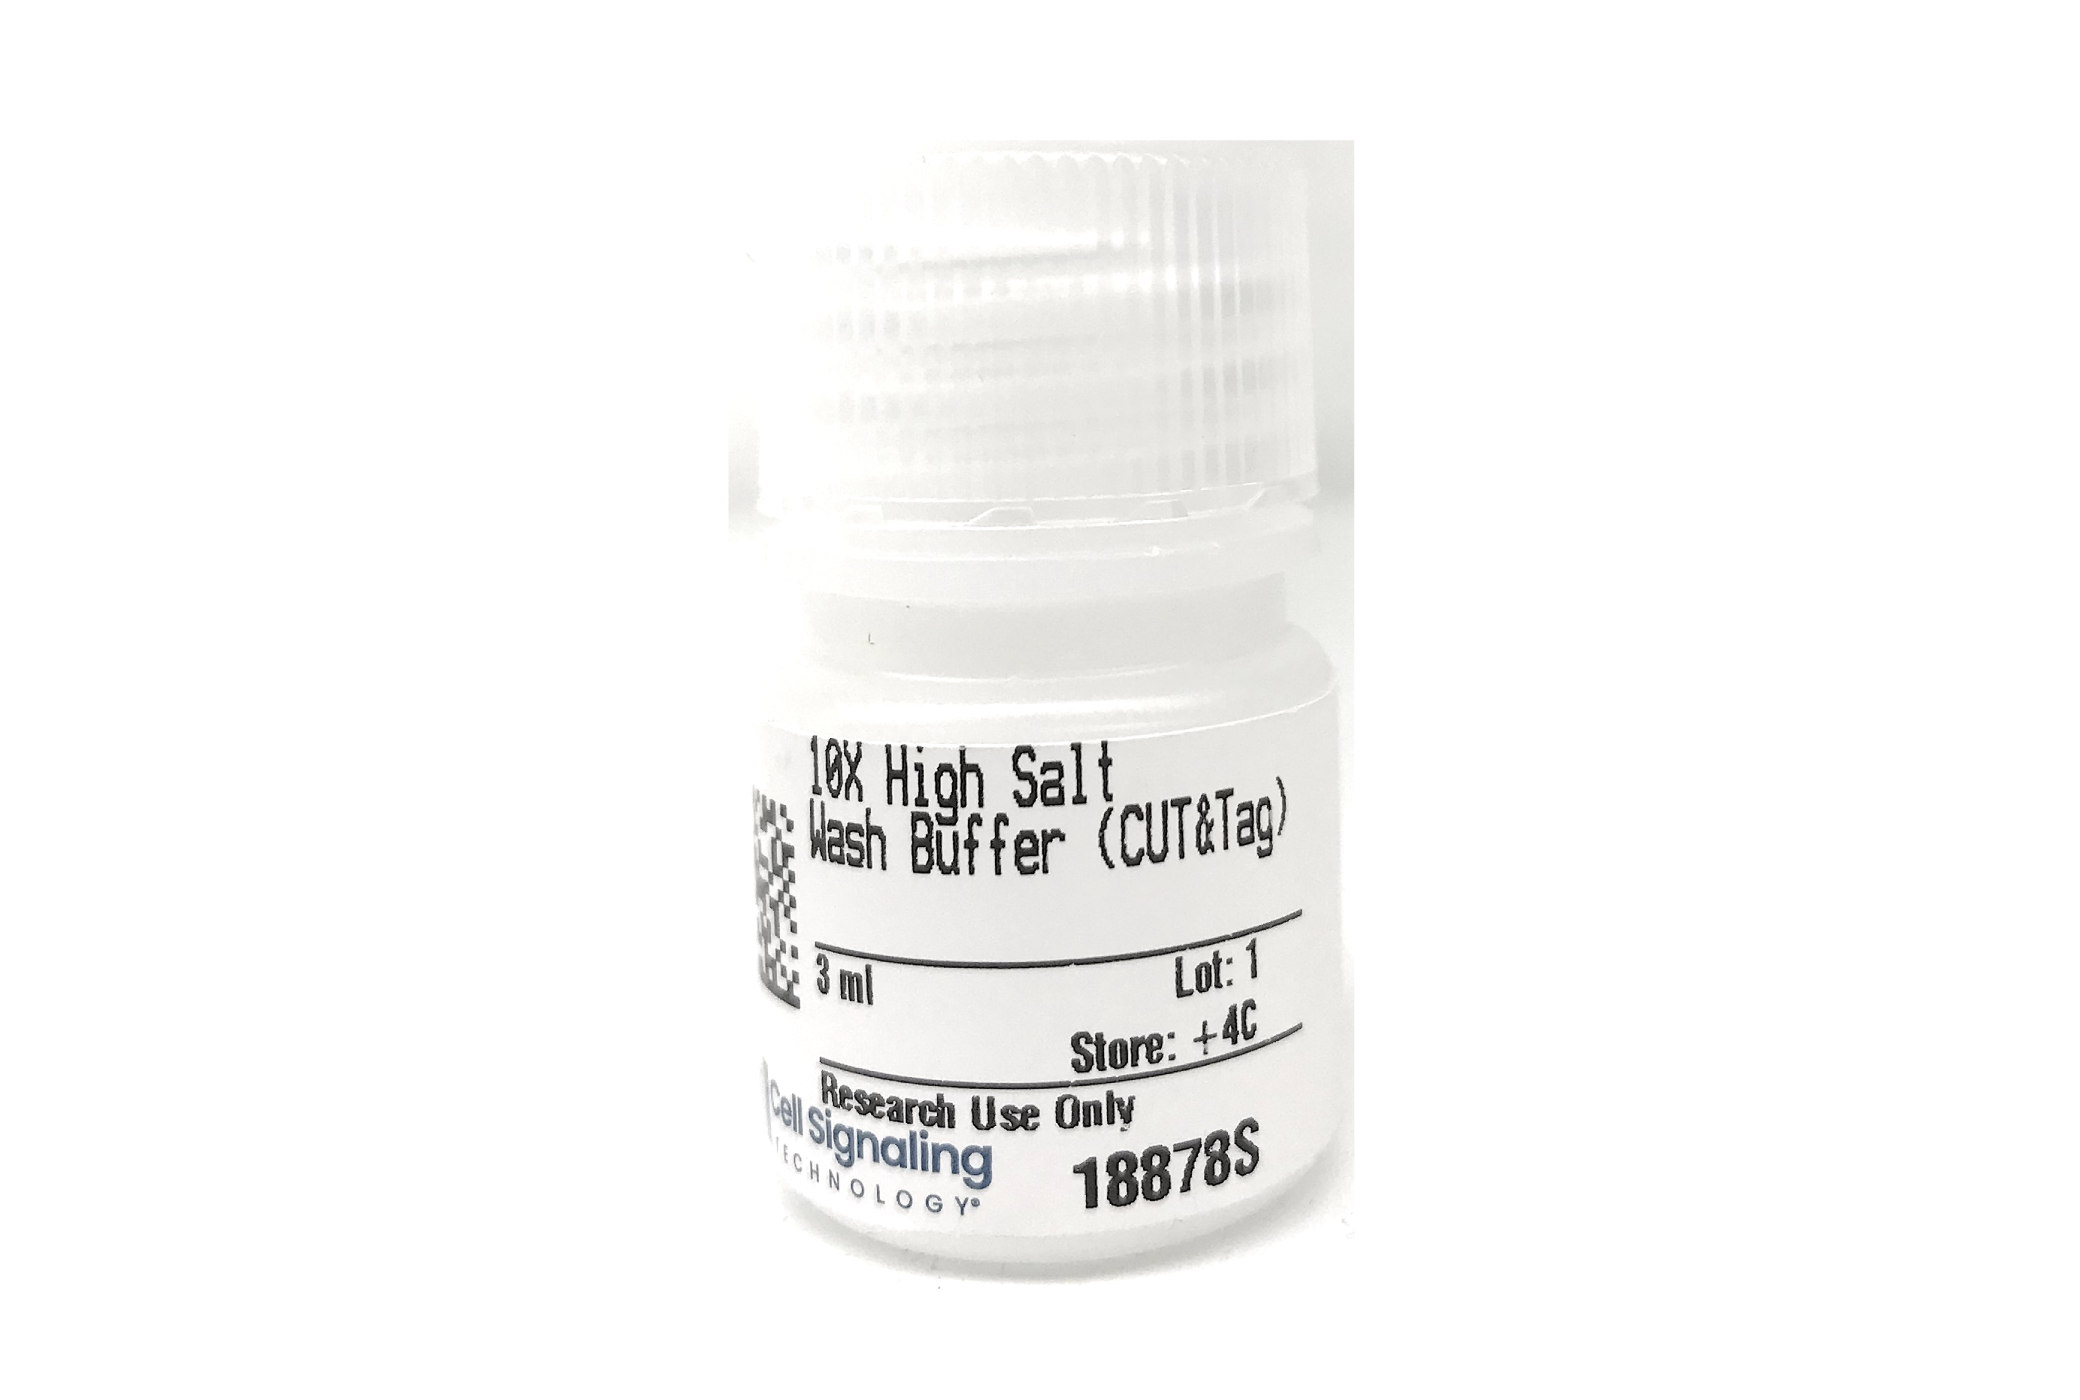  Image 1: 10X High Salt Wash Buffer (CUT&Tag)